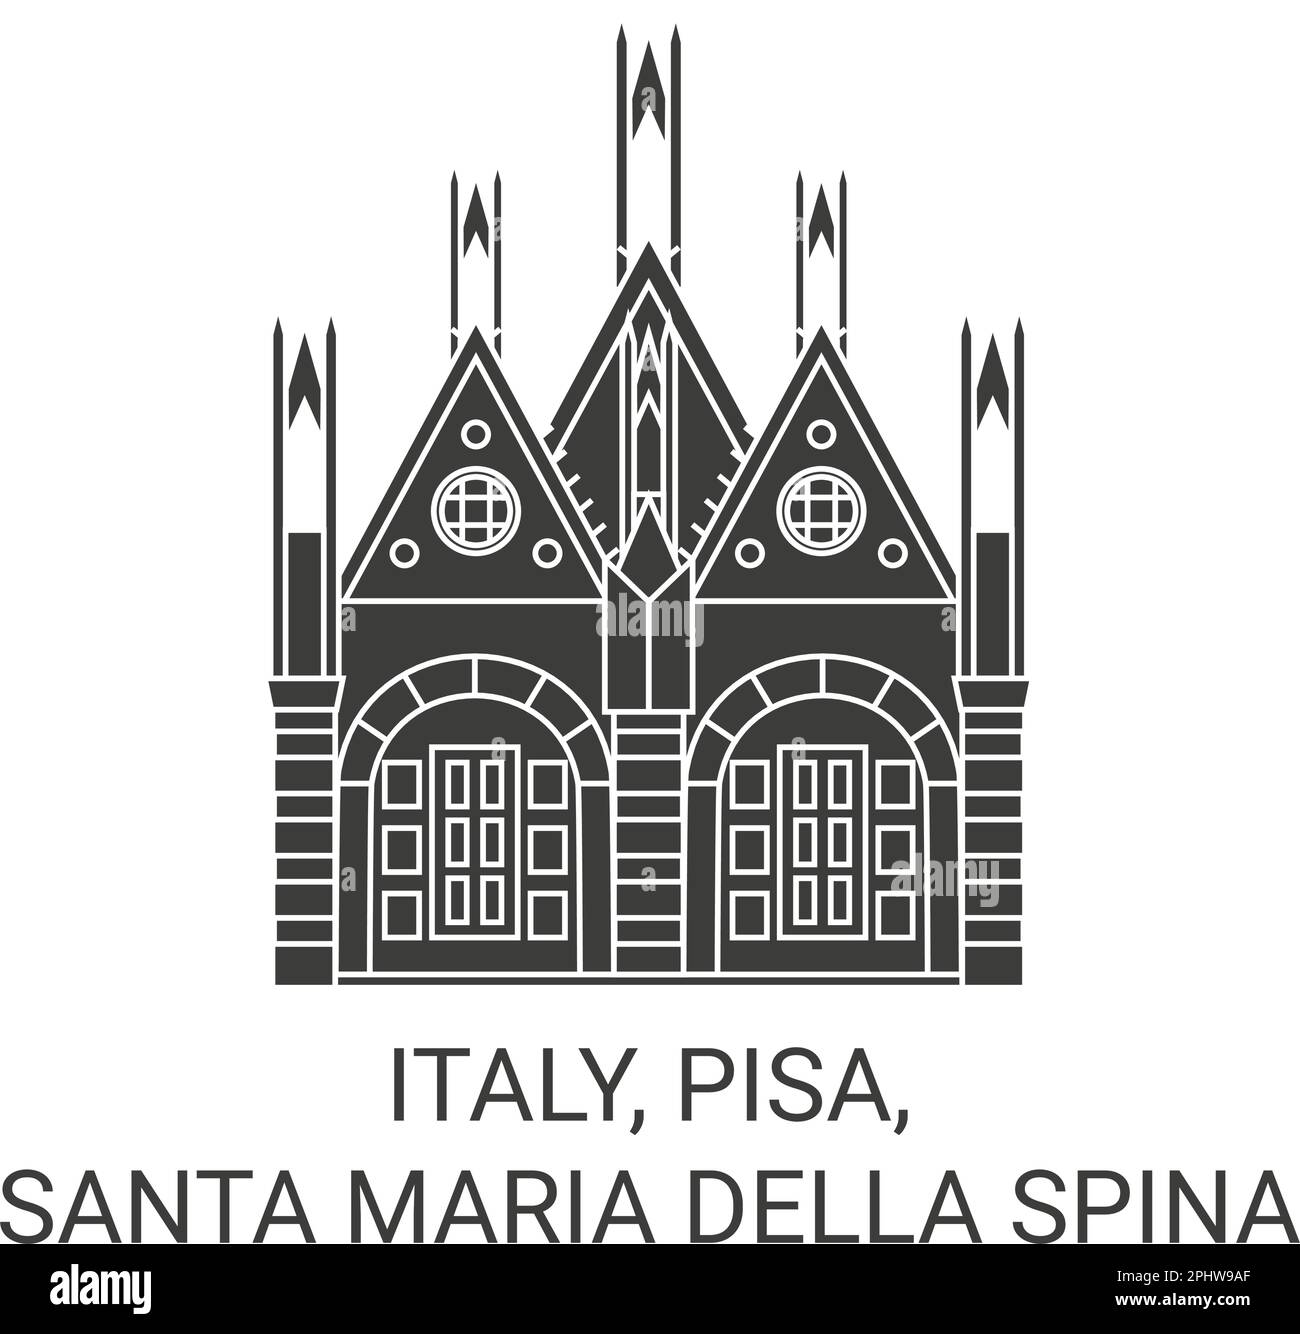 Italy, Pisa, Santa Maria Della Spina travel landmark vector illustration Stock Vector